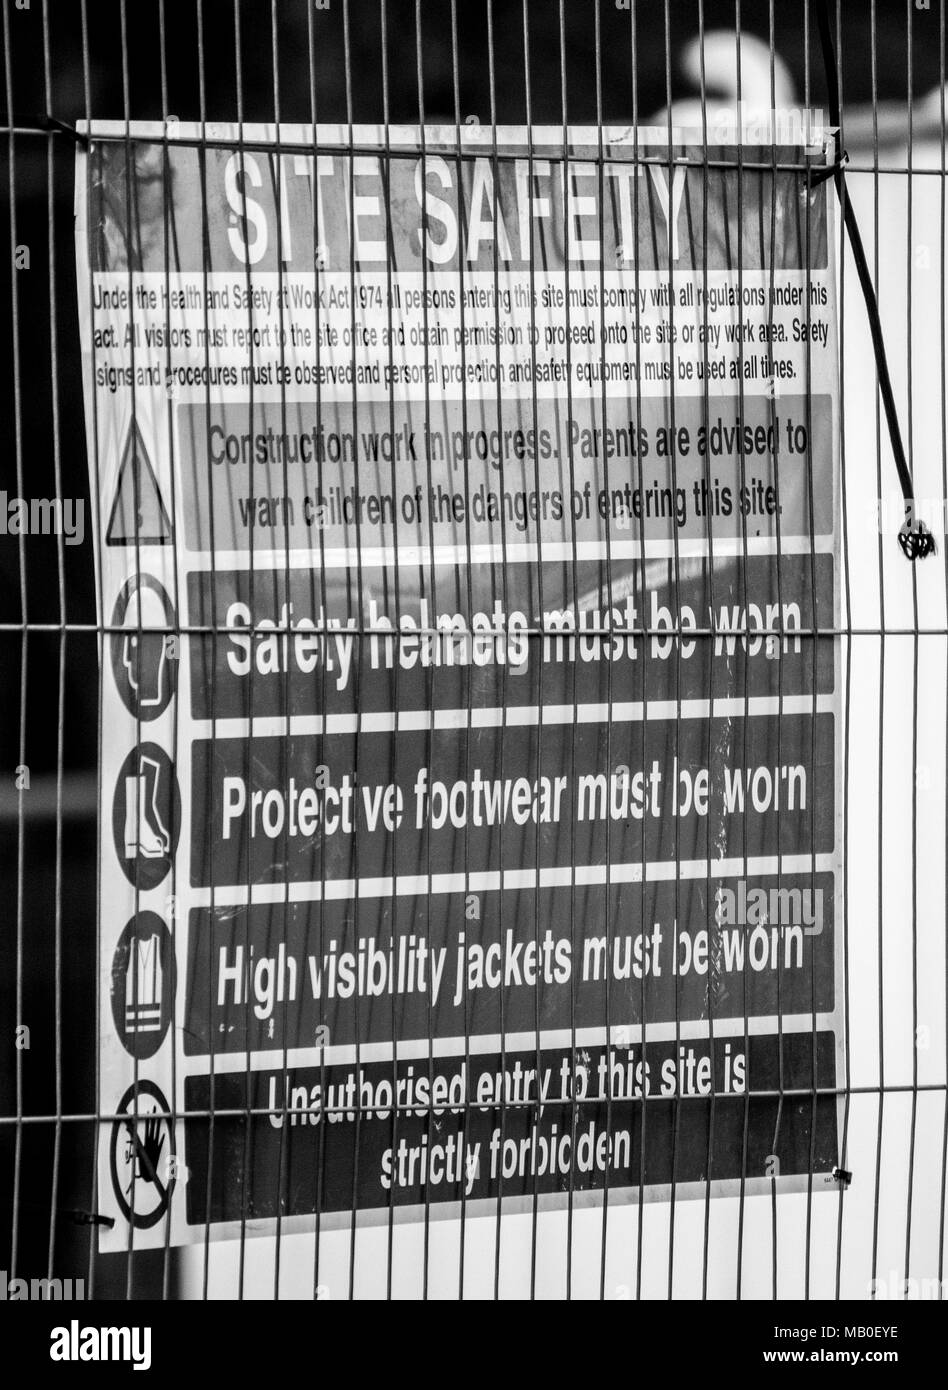 Heath e segnaletica di sicurezza visualizzata su un Heras recinzione in corrispondenza di un sito in costruzione Foto Stock